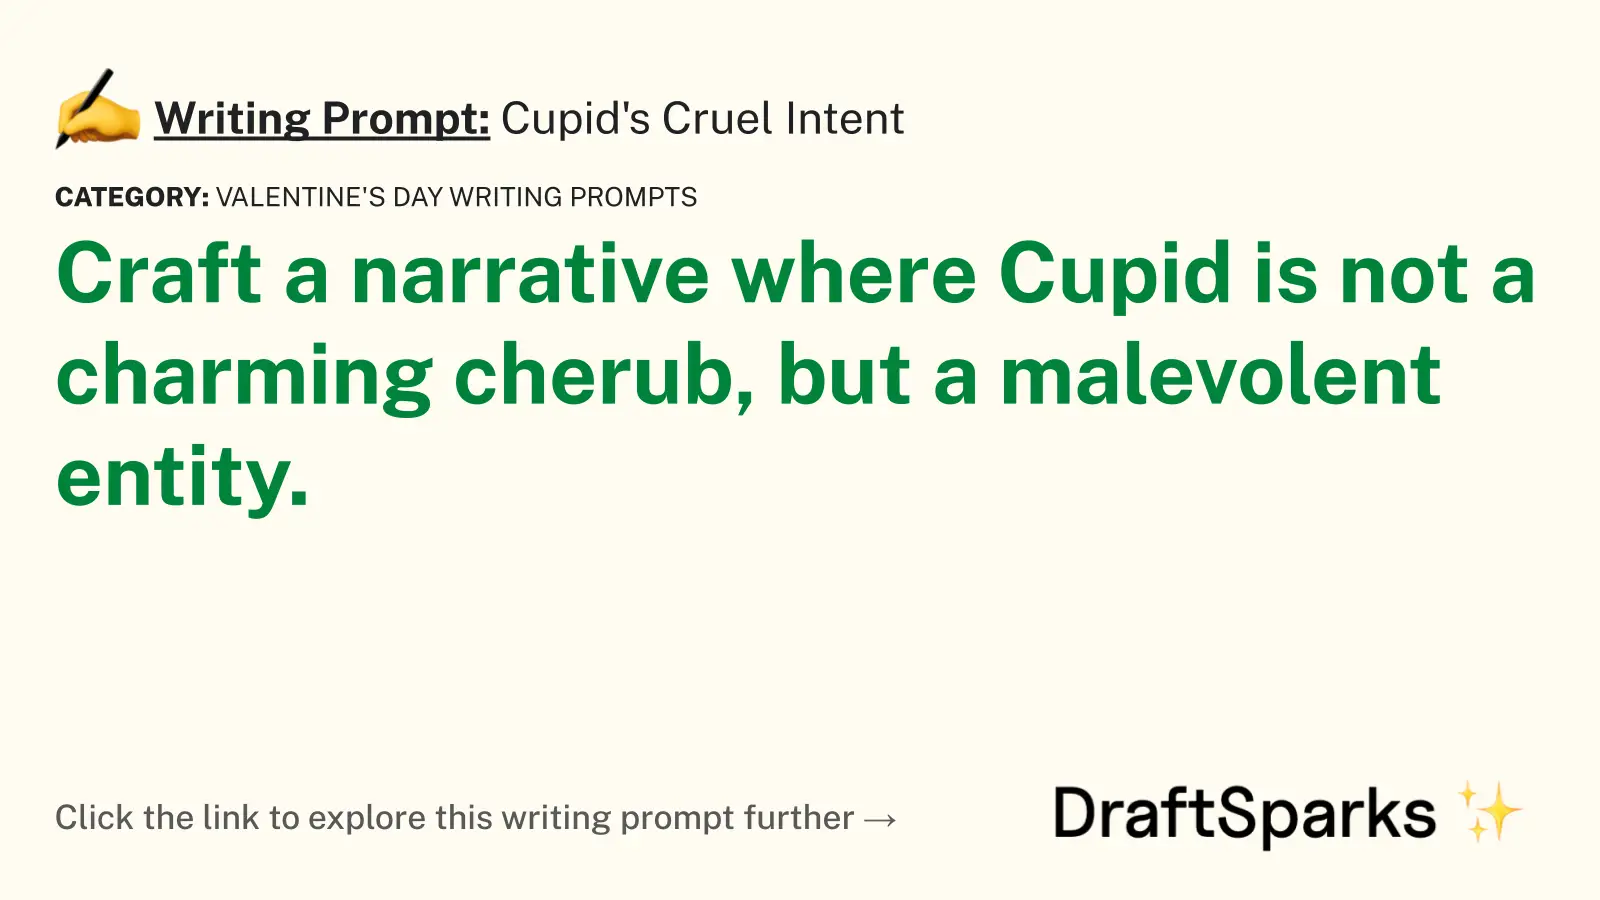 Cupid’s Cruel Intent